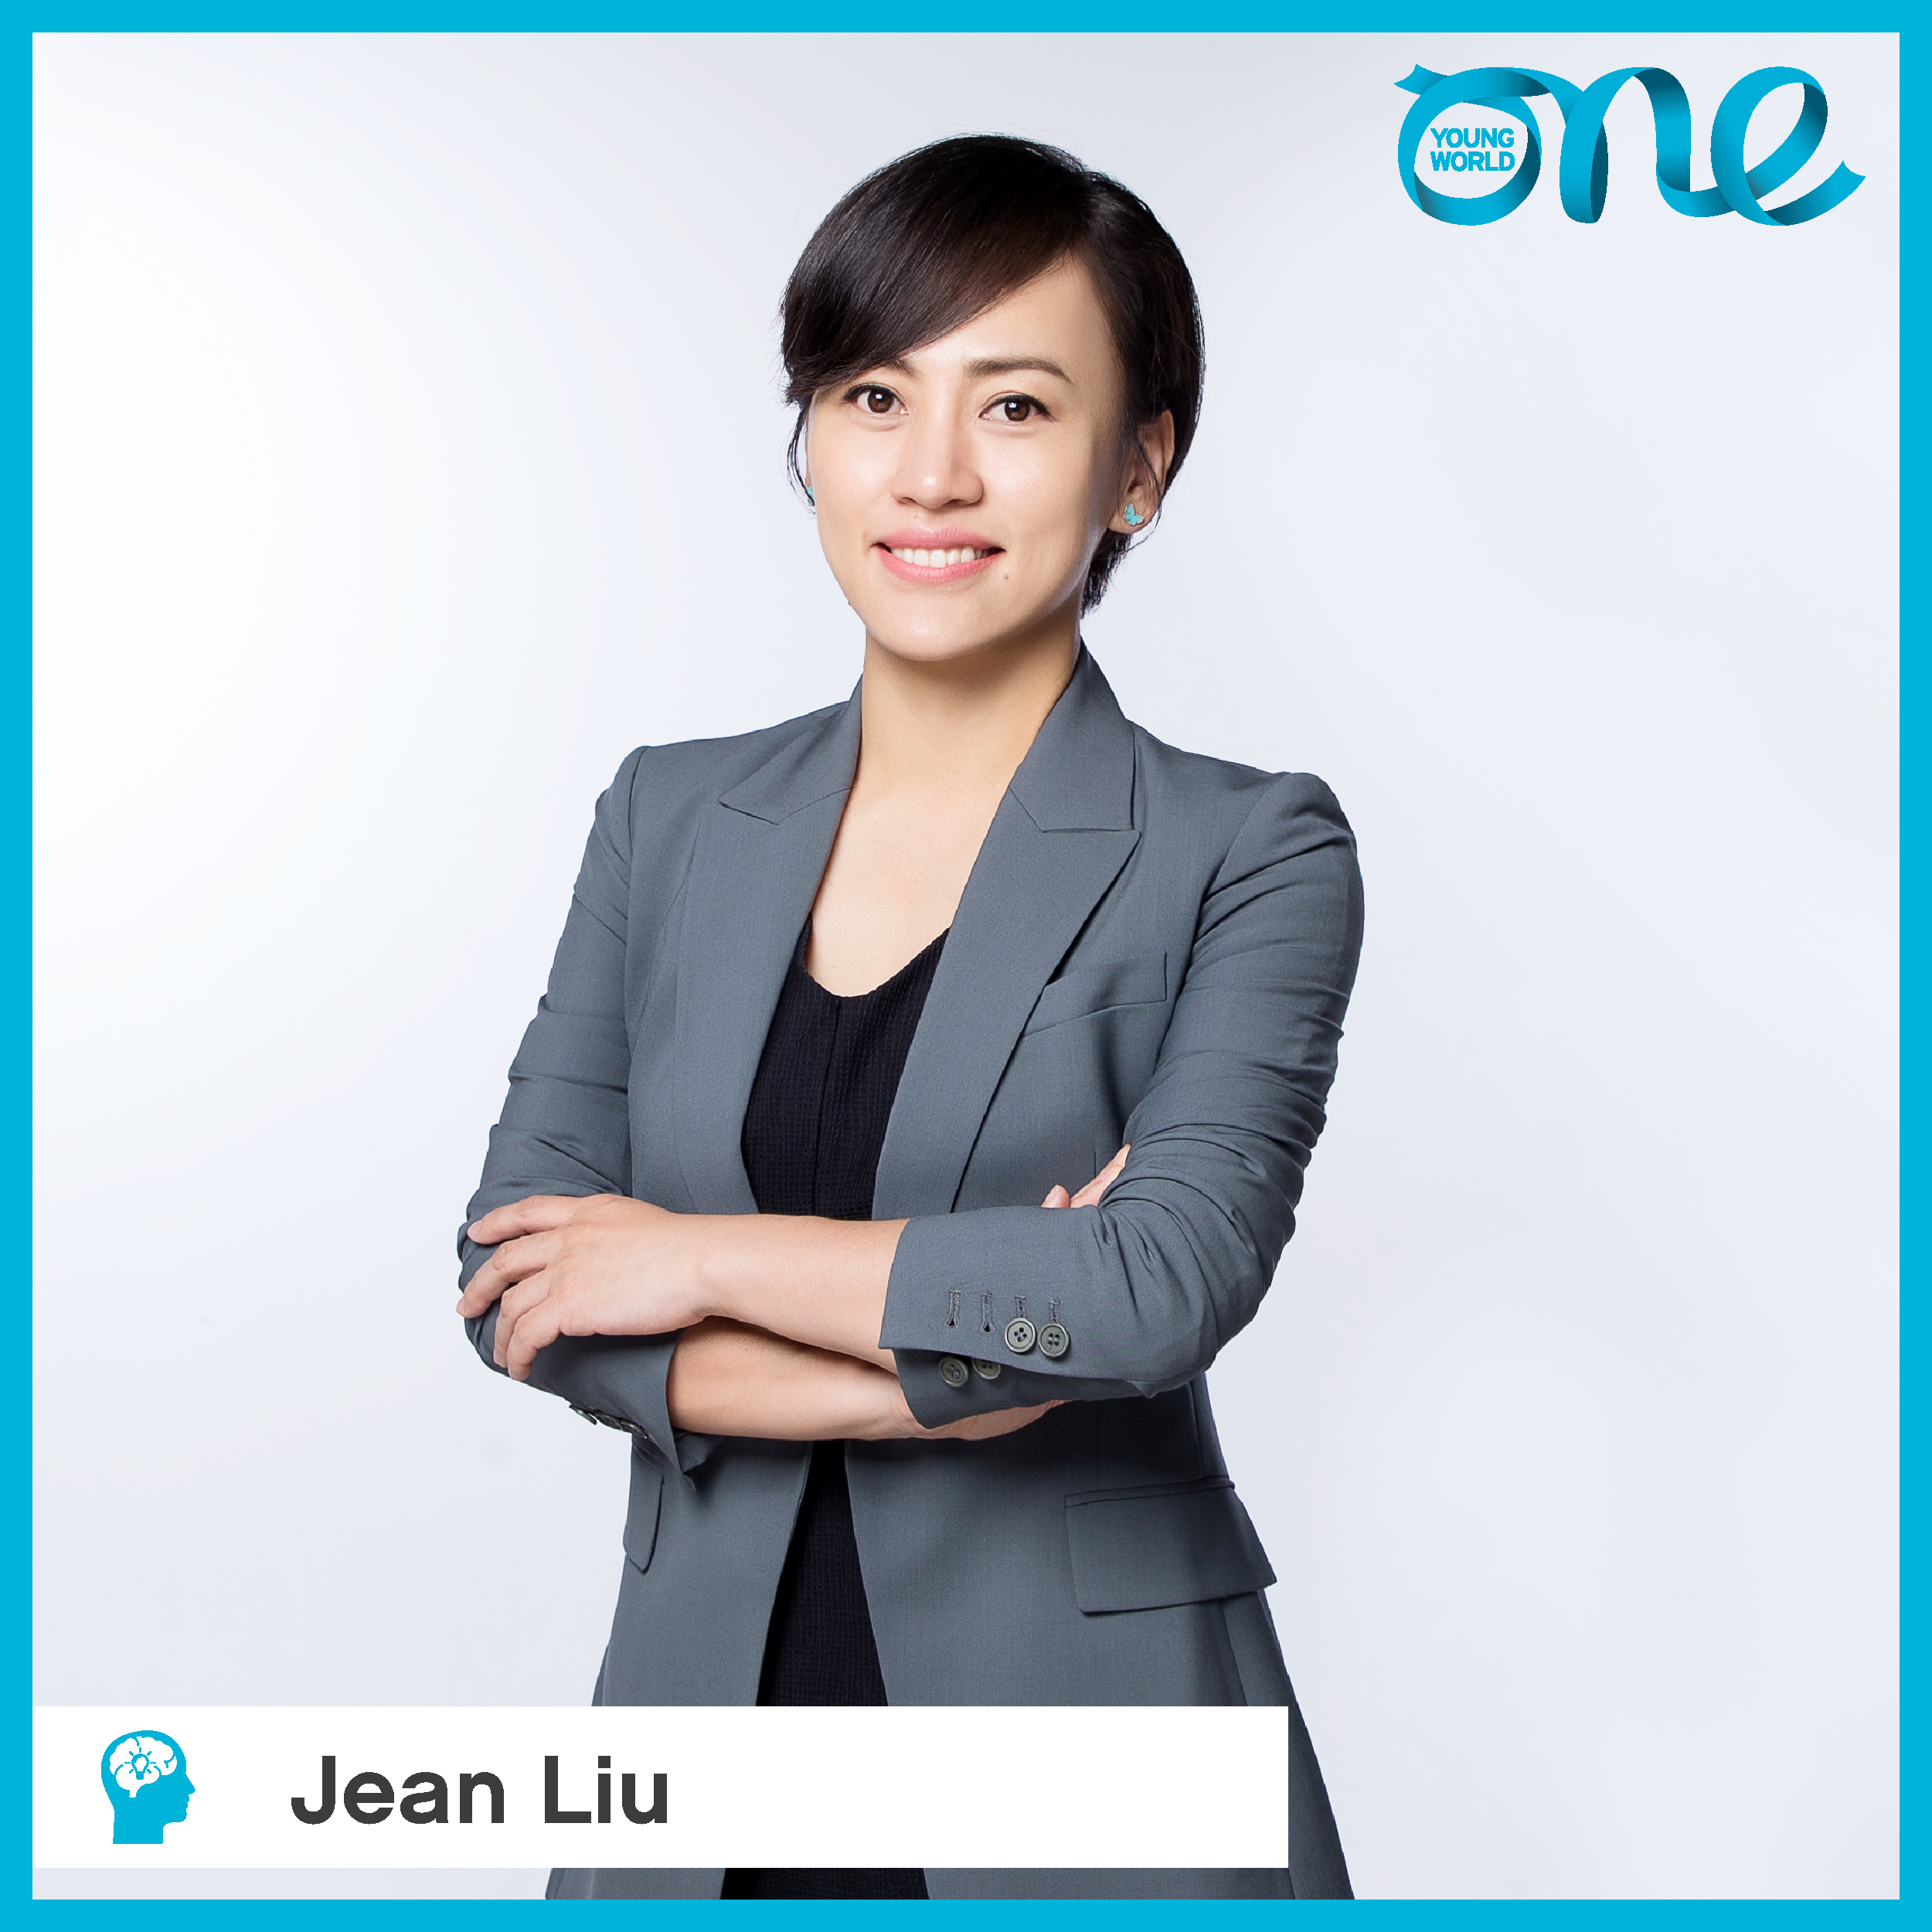 Jean Liu